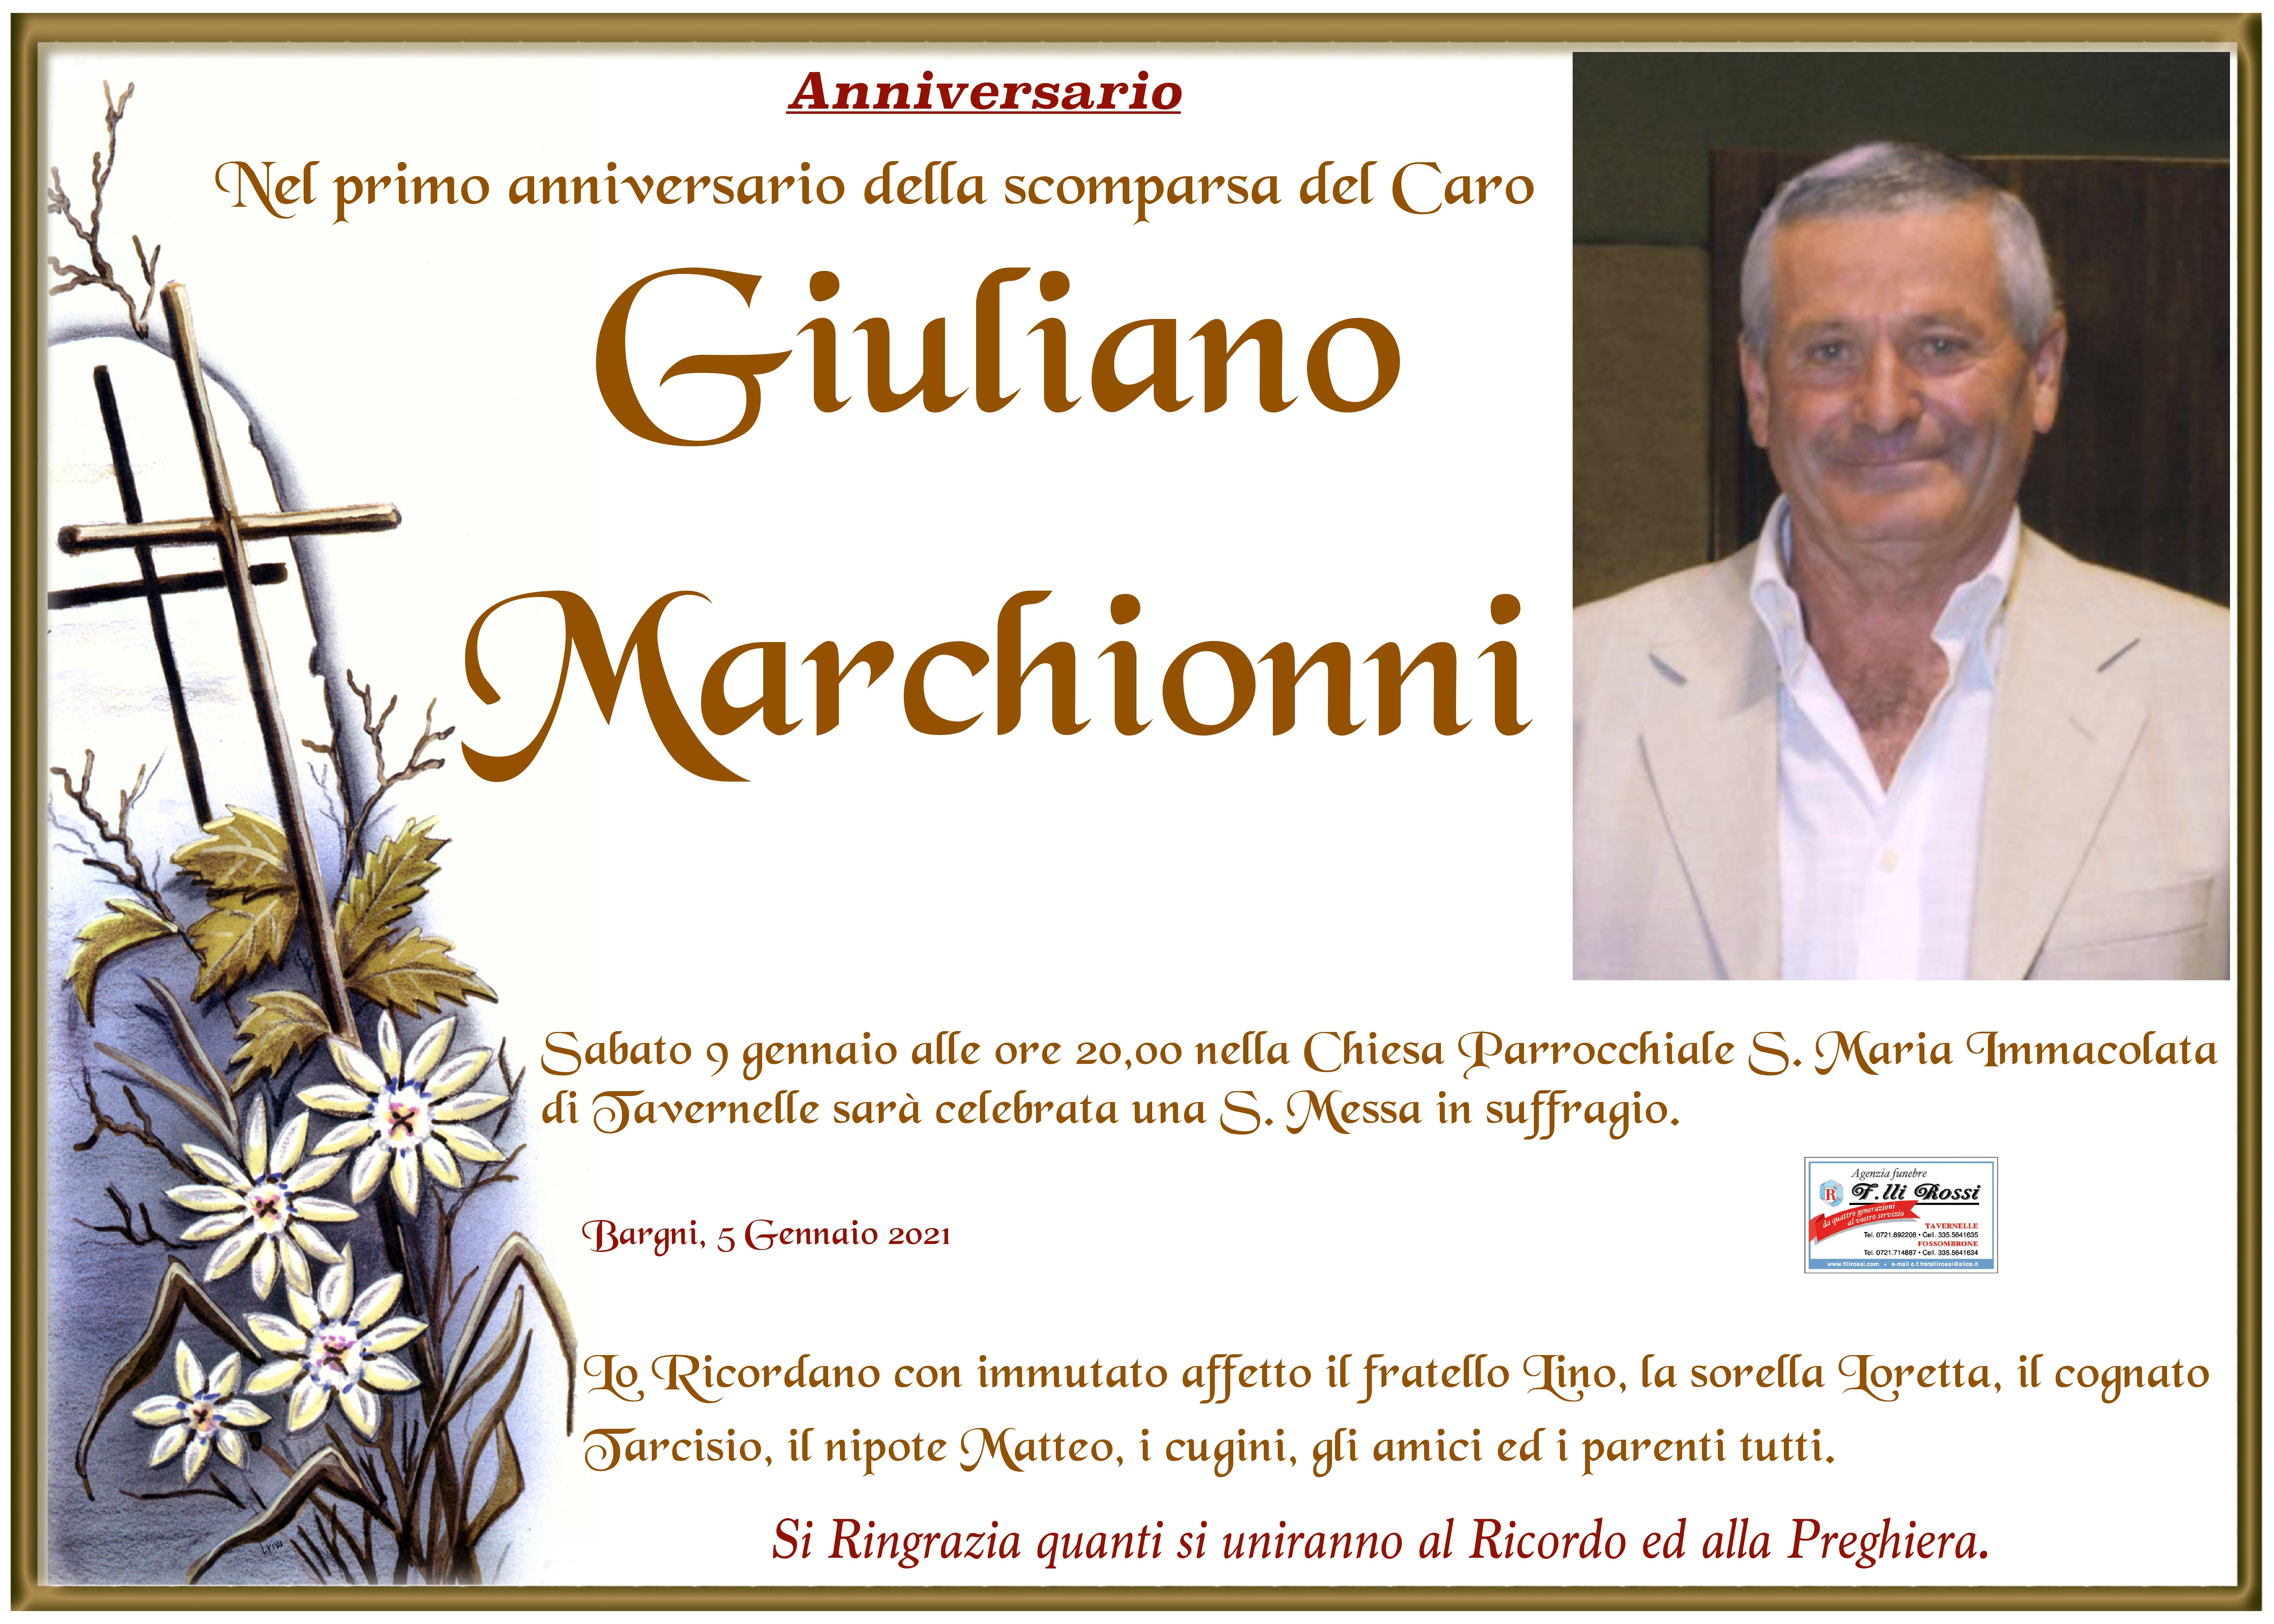 Giuliano Marchionni